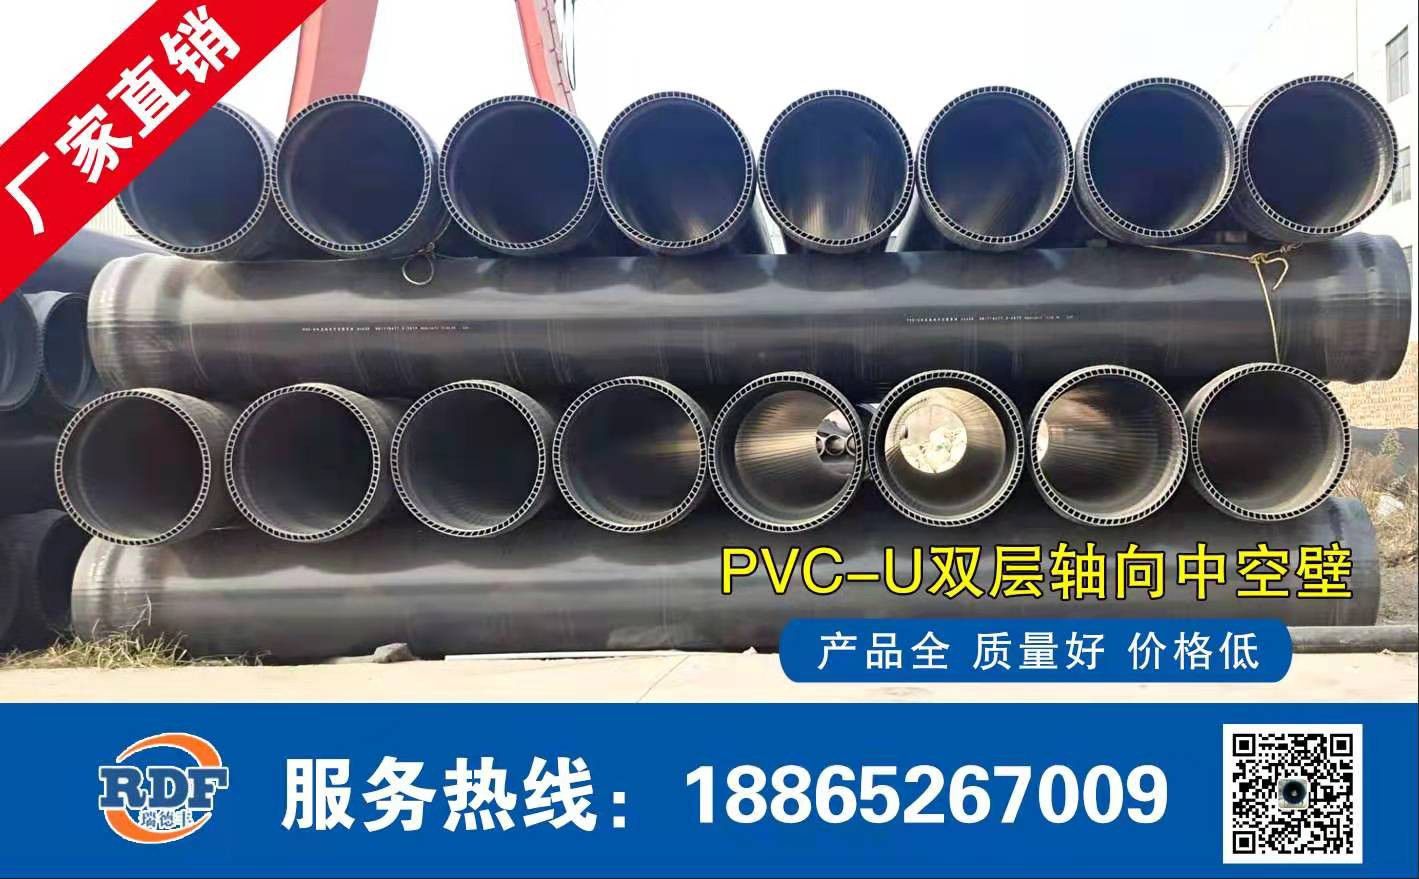 通辽PVC-U低压灌溉管发展简介